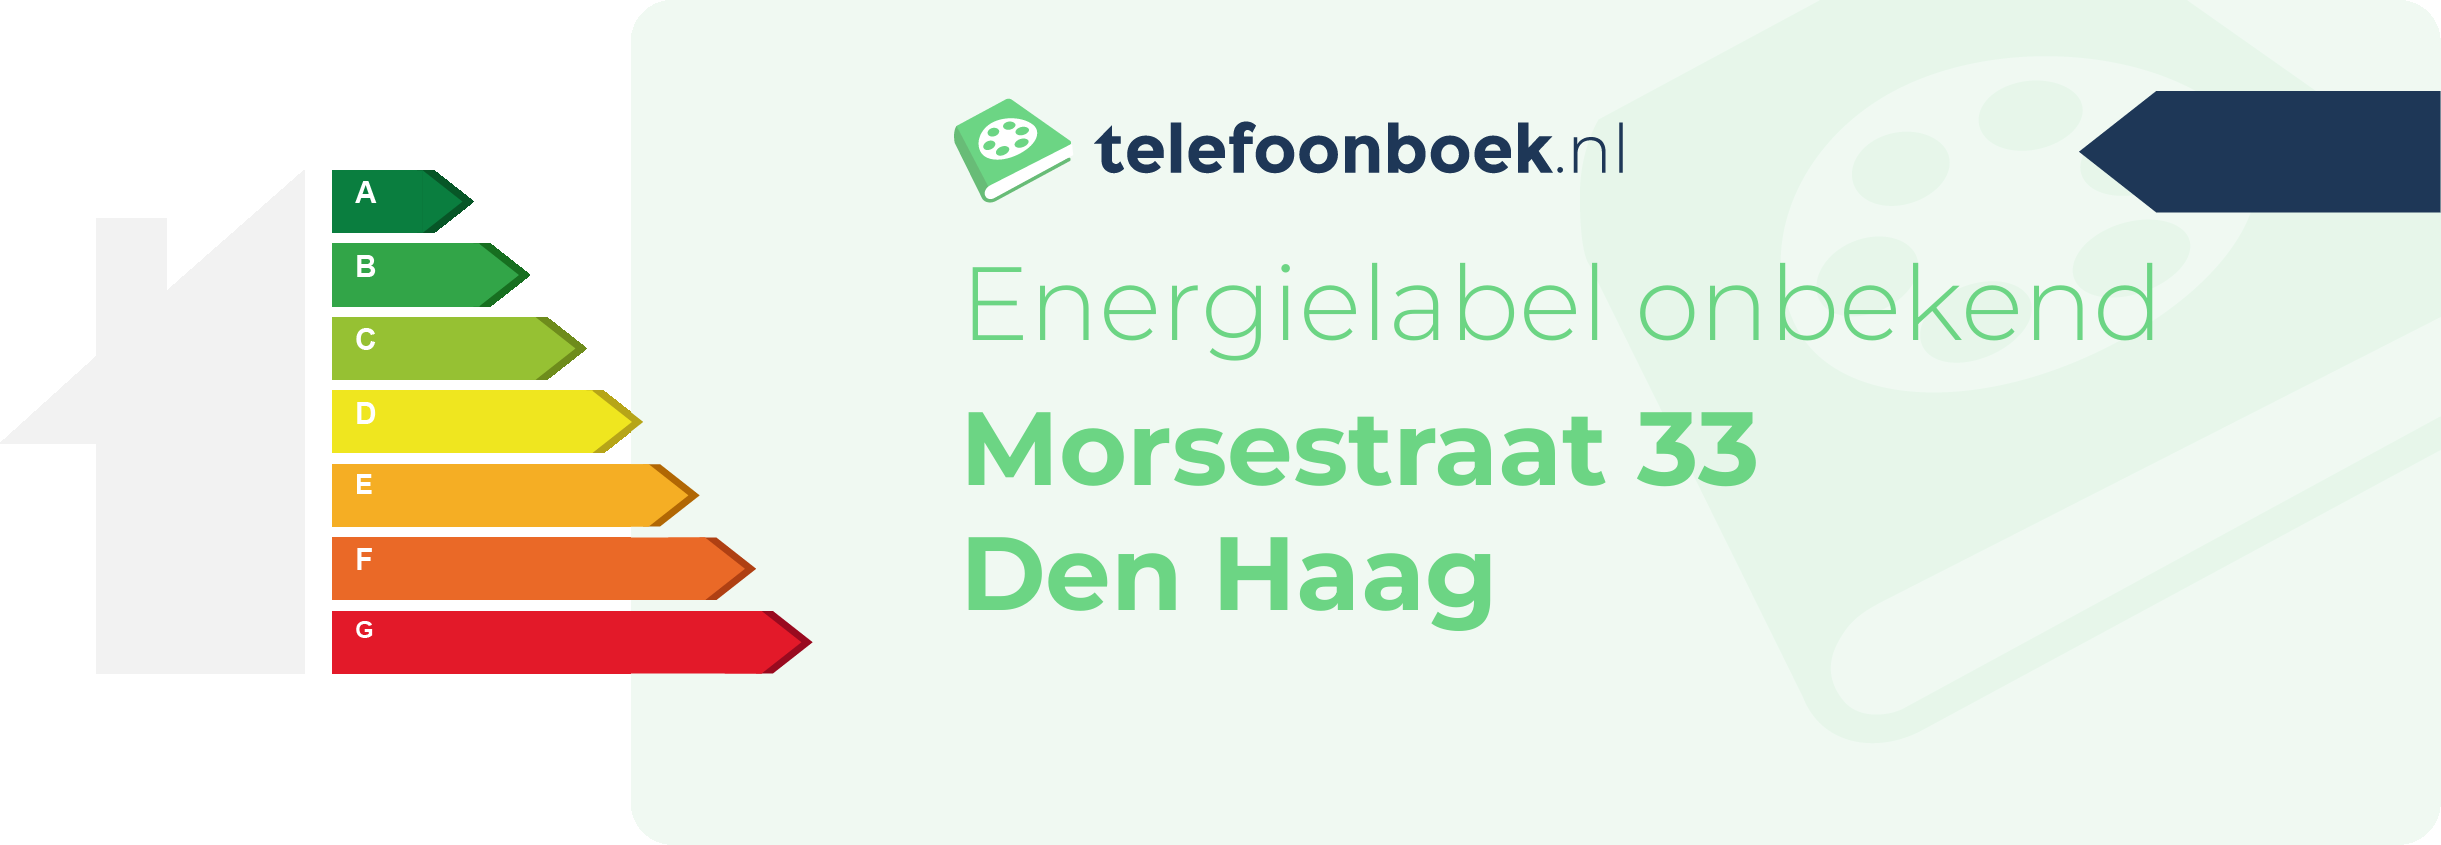 Energielabel Morsestraat 33 Den Haag